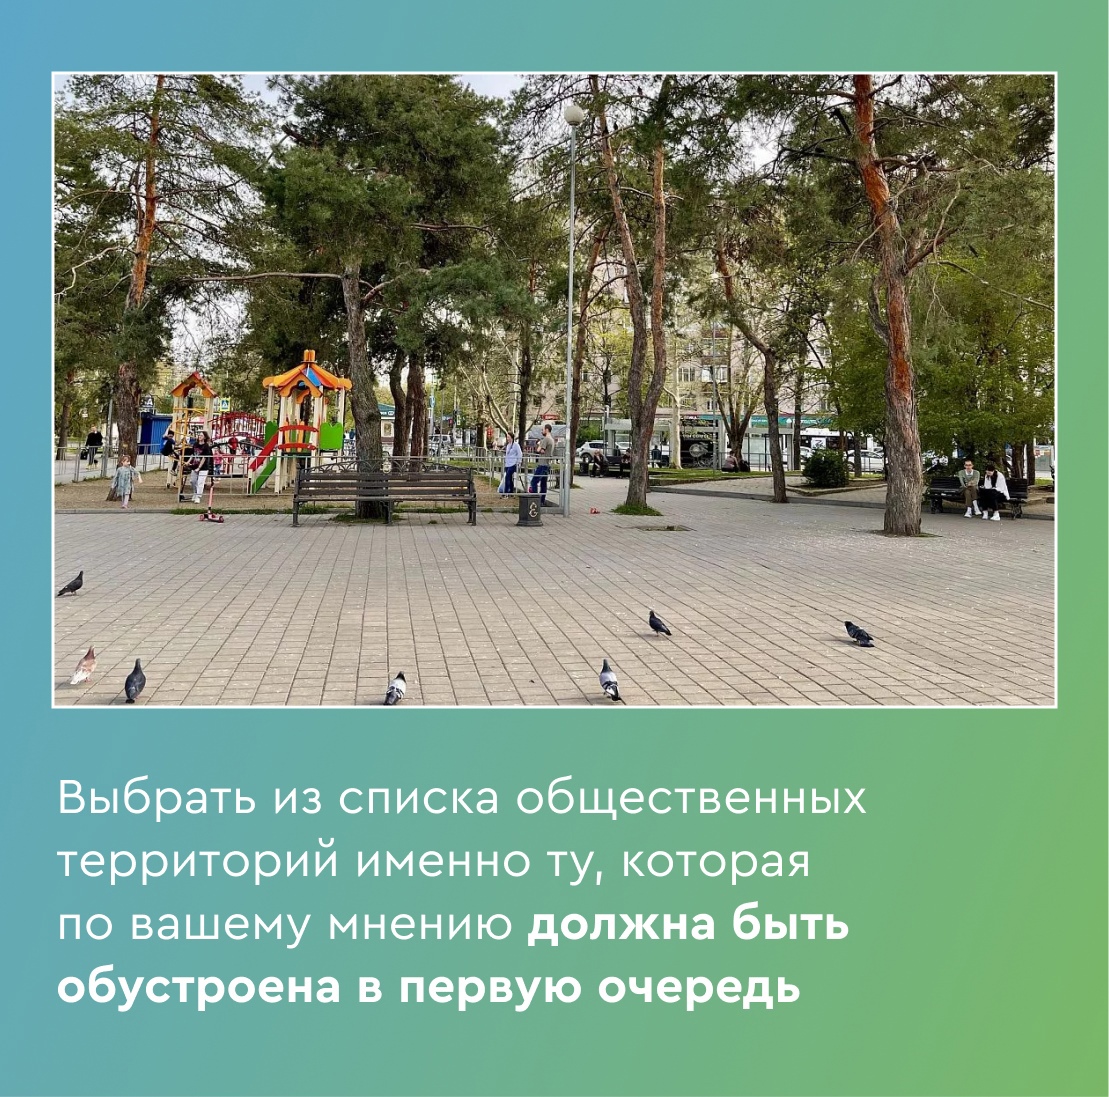 Объясняем кубань. Городская среда. Зеленые зоны Кубани. Общественная зона в парке. Комфортная городская среда.